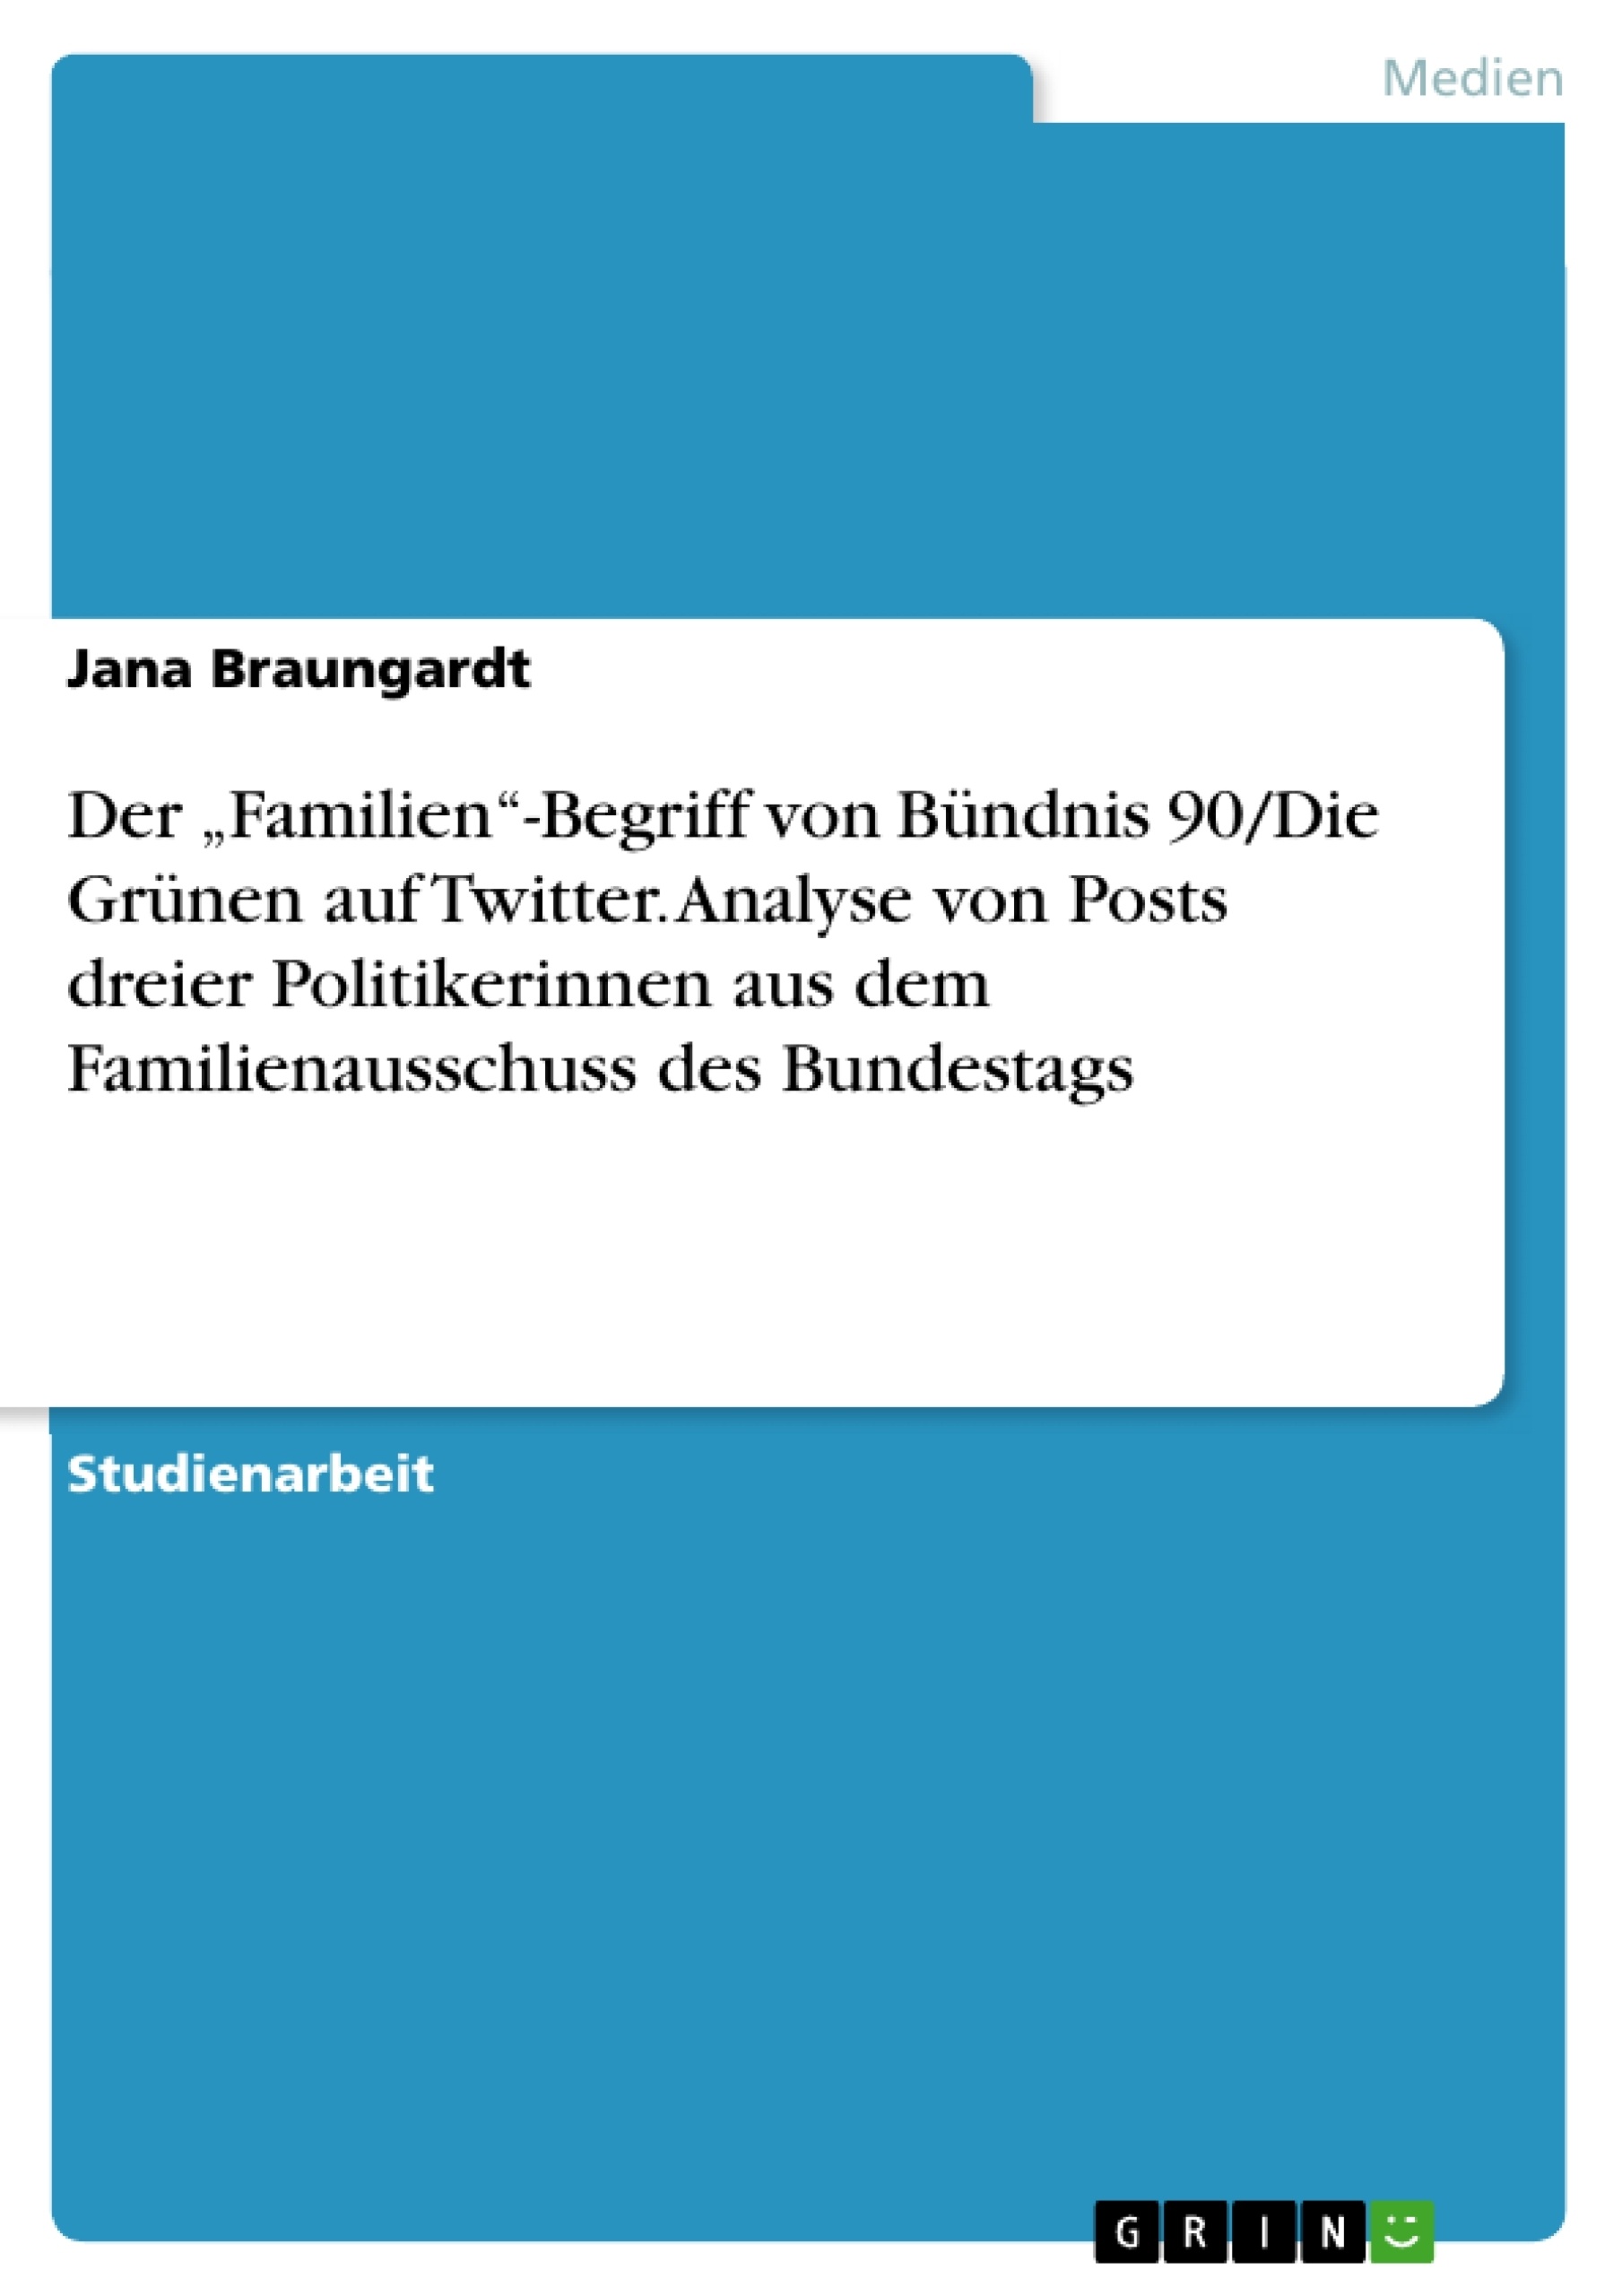 Título: Der „Familien“-Begriff von Bündnis 90/Die Grünen auf Twitter. Analyse von Posts dreier Politikerinnen aus dem Familienausschuss des Bundestags